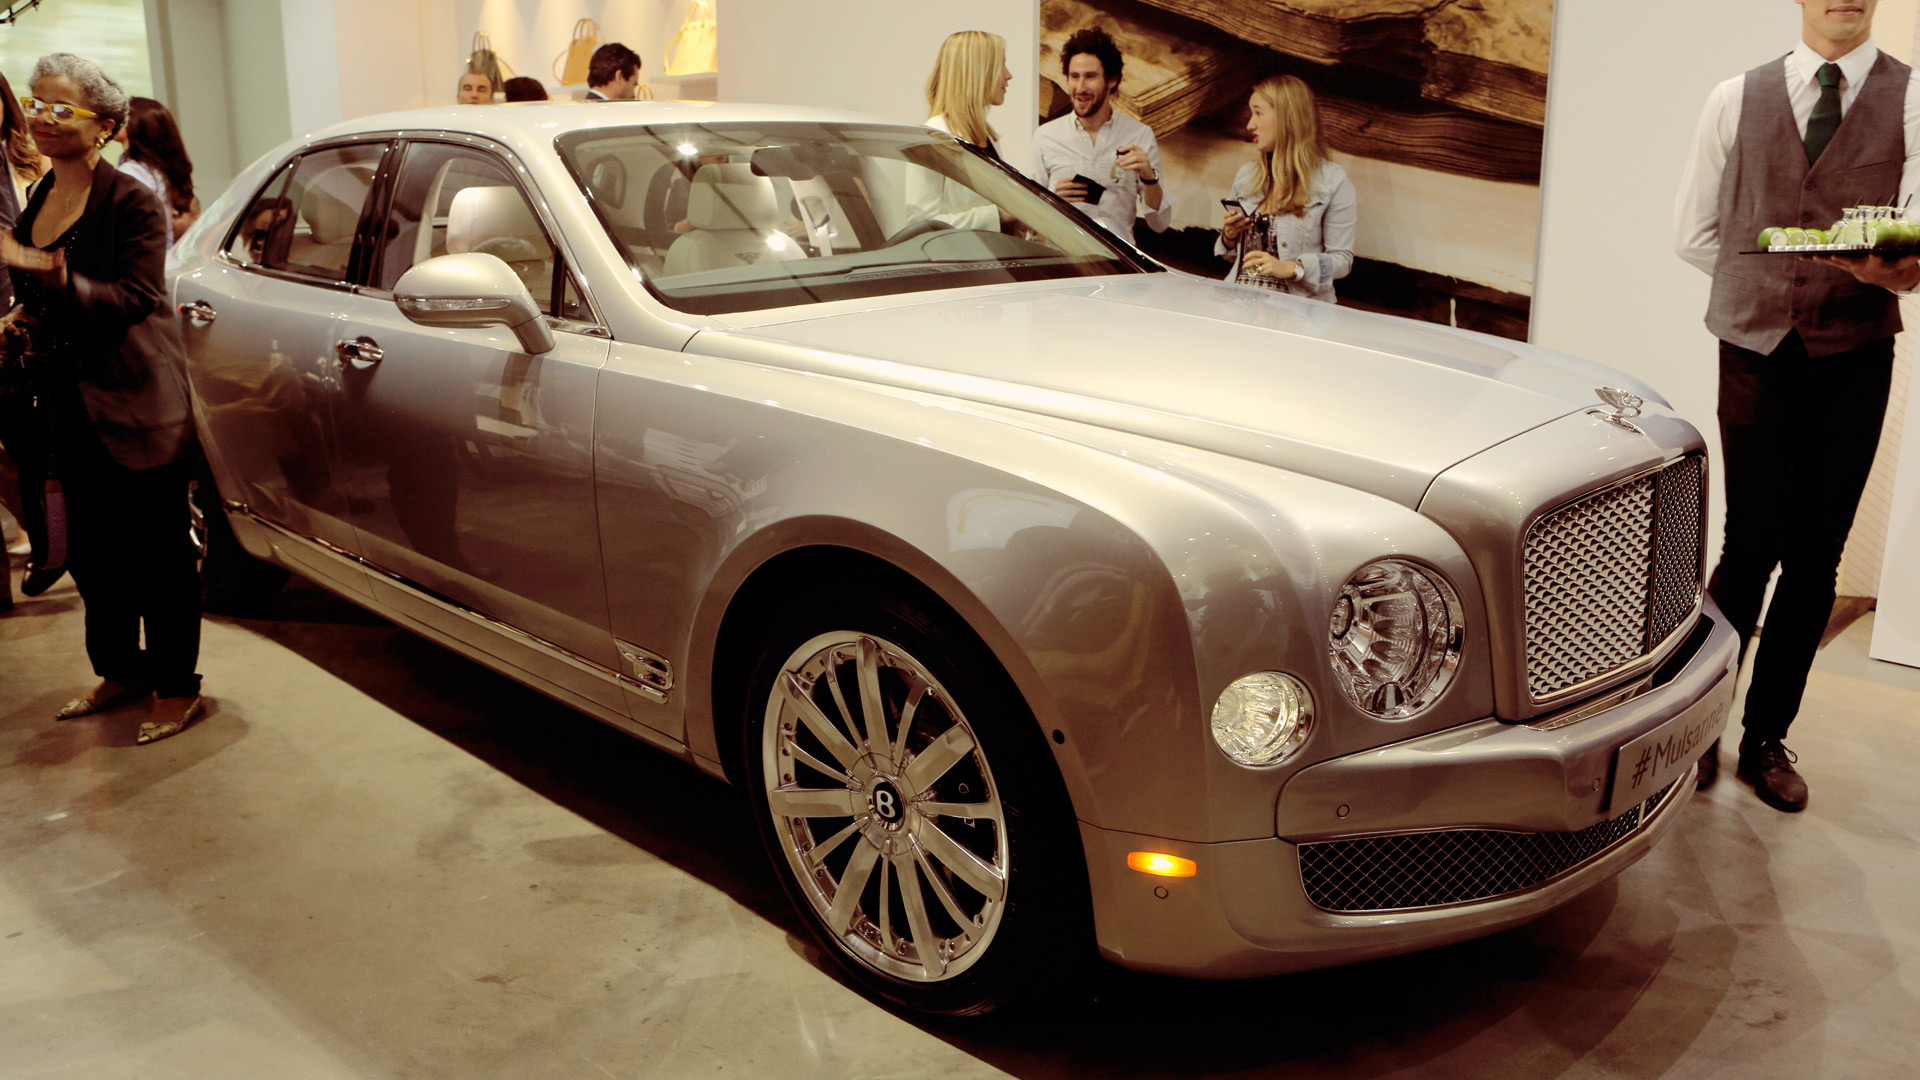 Bentley Bespoke - even the Bentley was served hors d'oeuvre